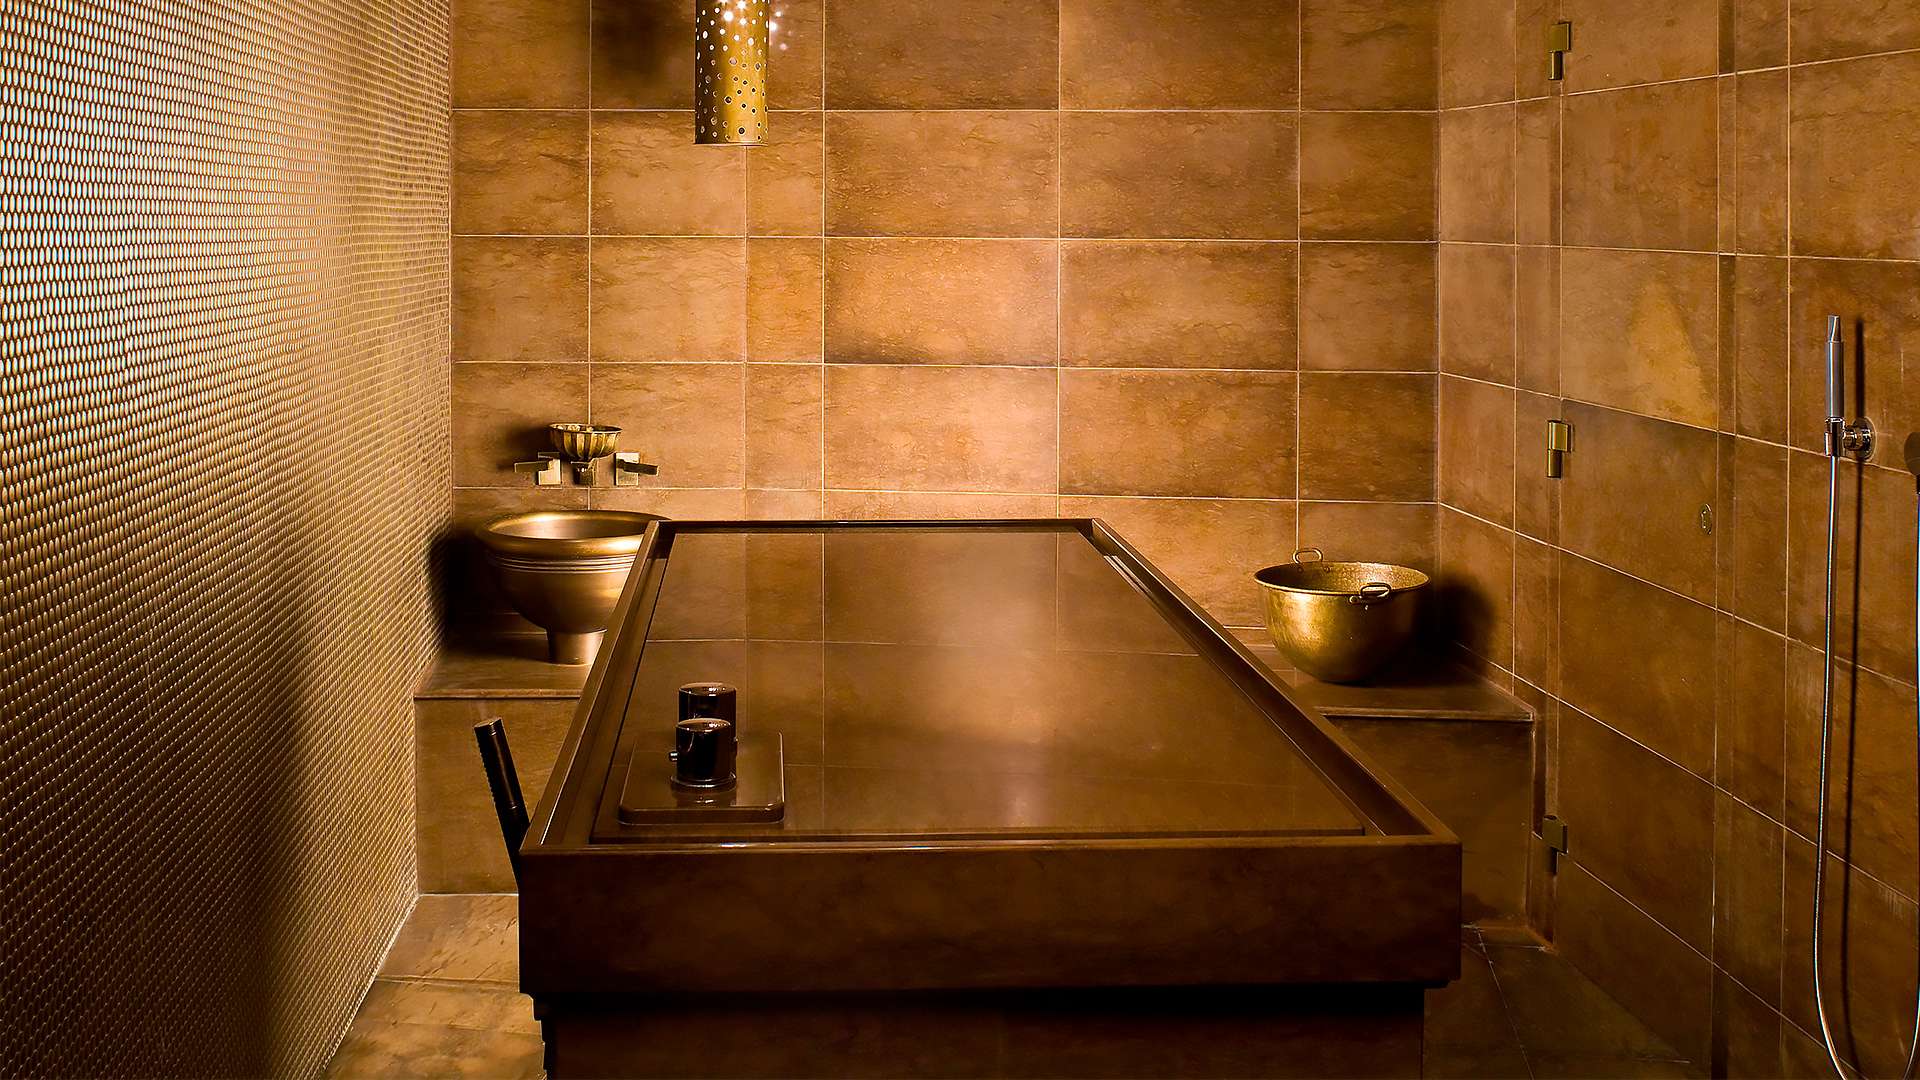 Турецкая баня под ключ: внутренняя отделка и особенности проектирования, смотреть видео